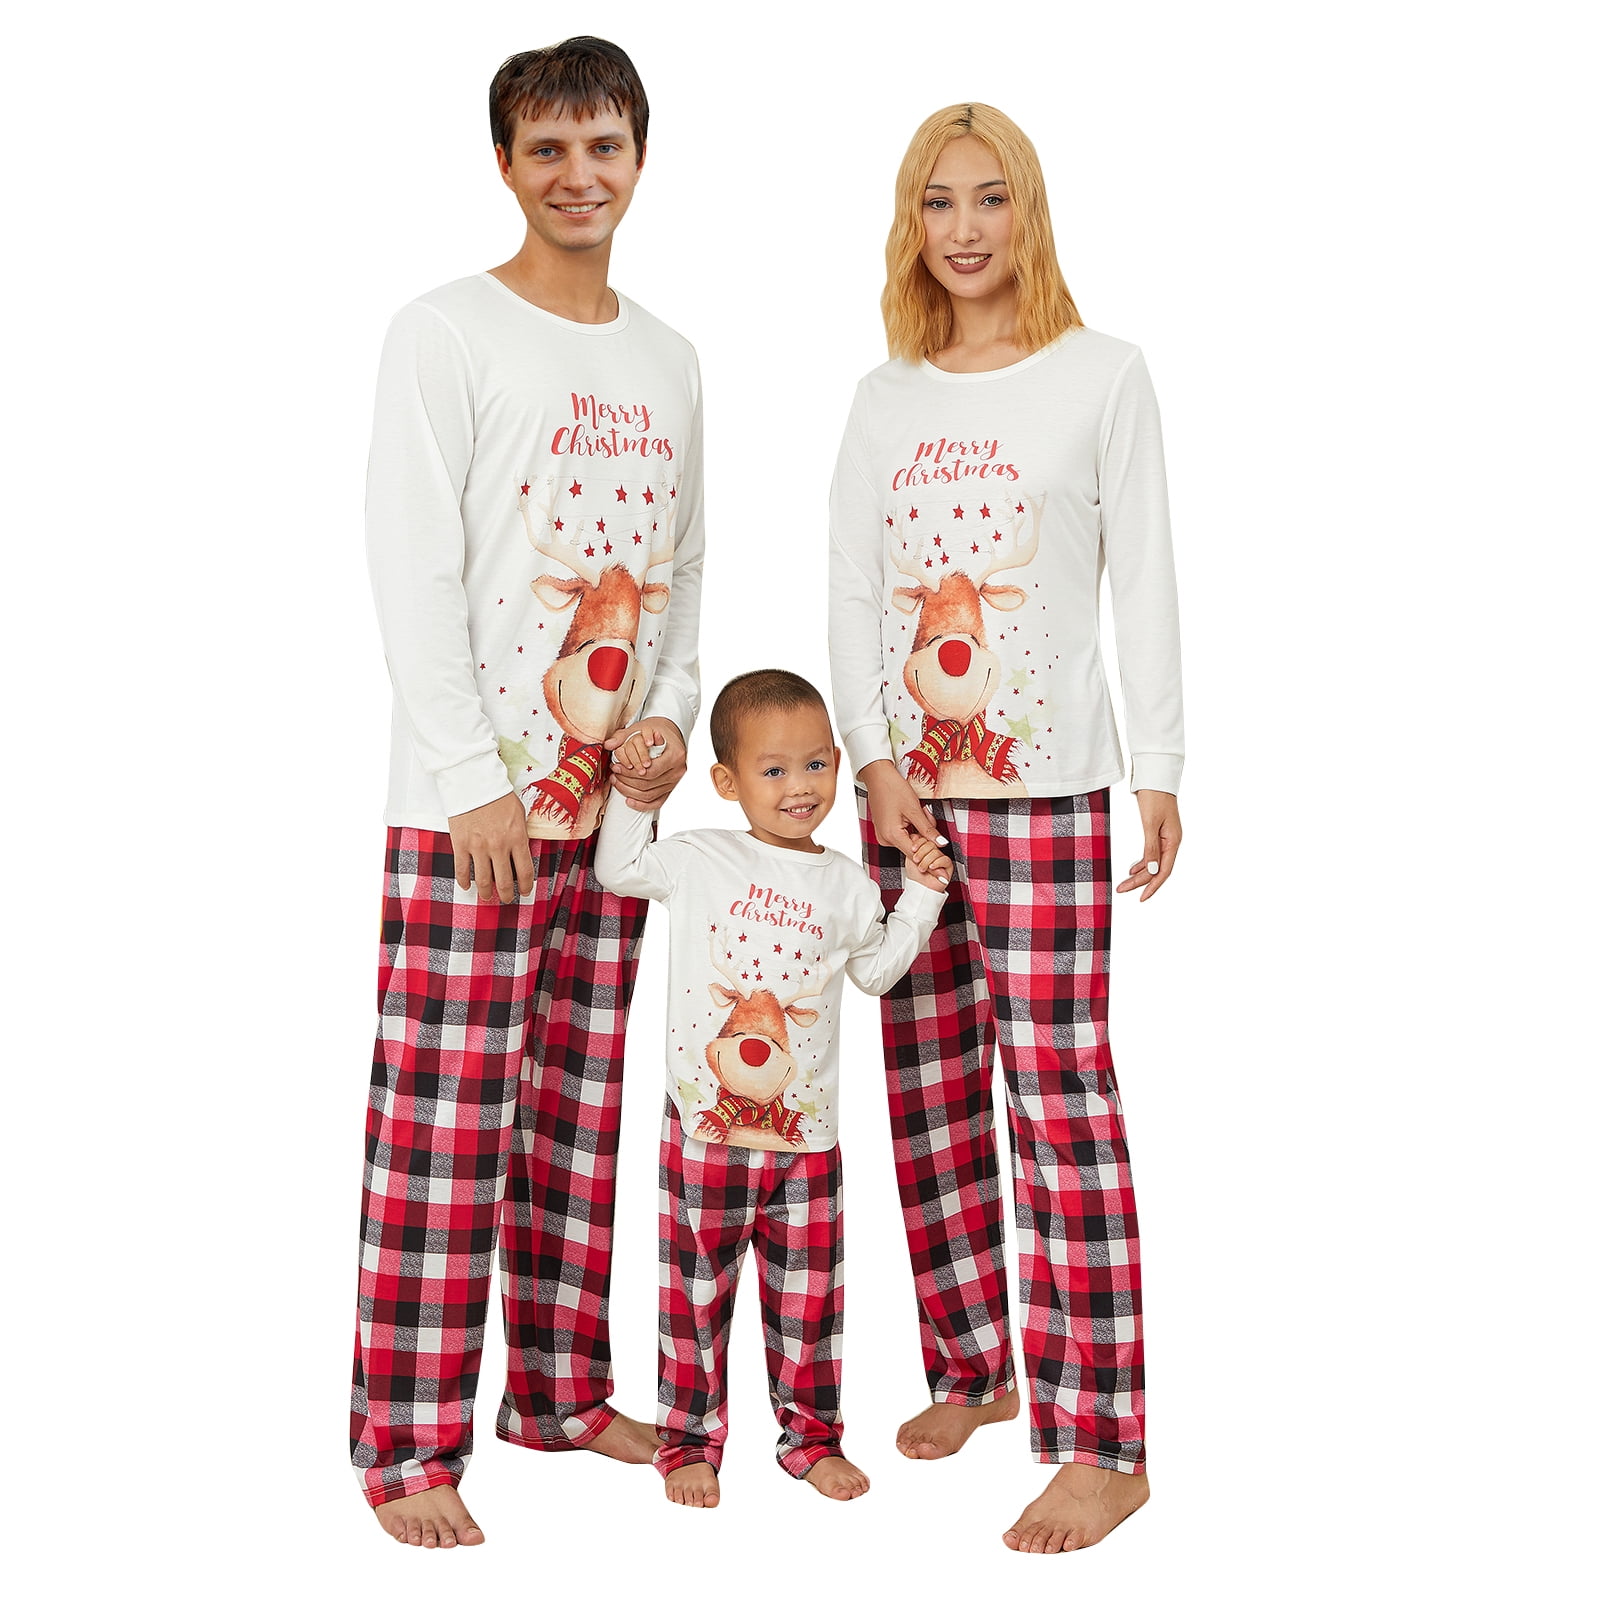 YiLvUst Family Matching Pajamas Christmas Pjs Holiday Nightwear Sleepwear  Sets Deer Print Long Sleeve Pjs Jammies